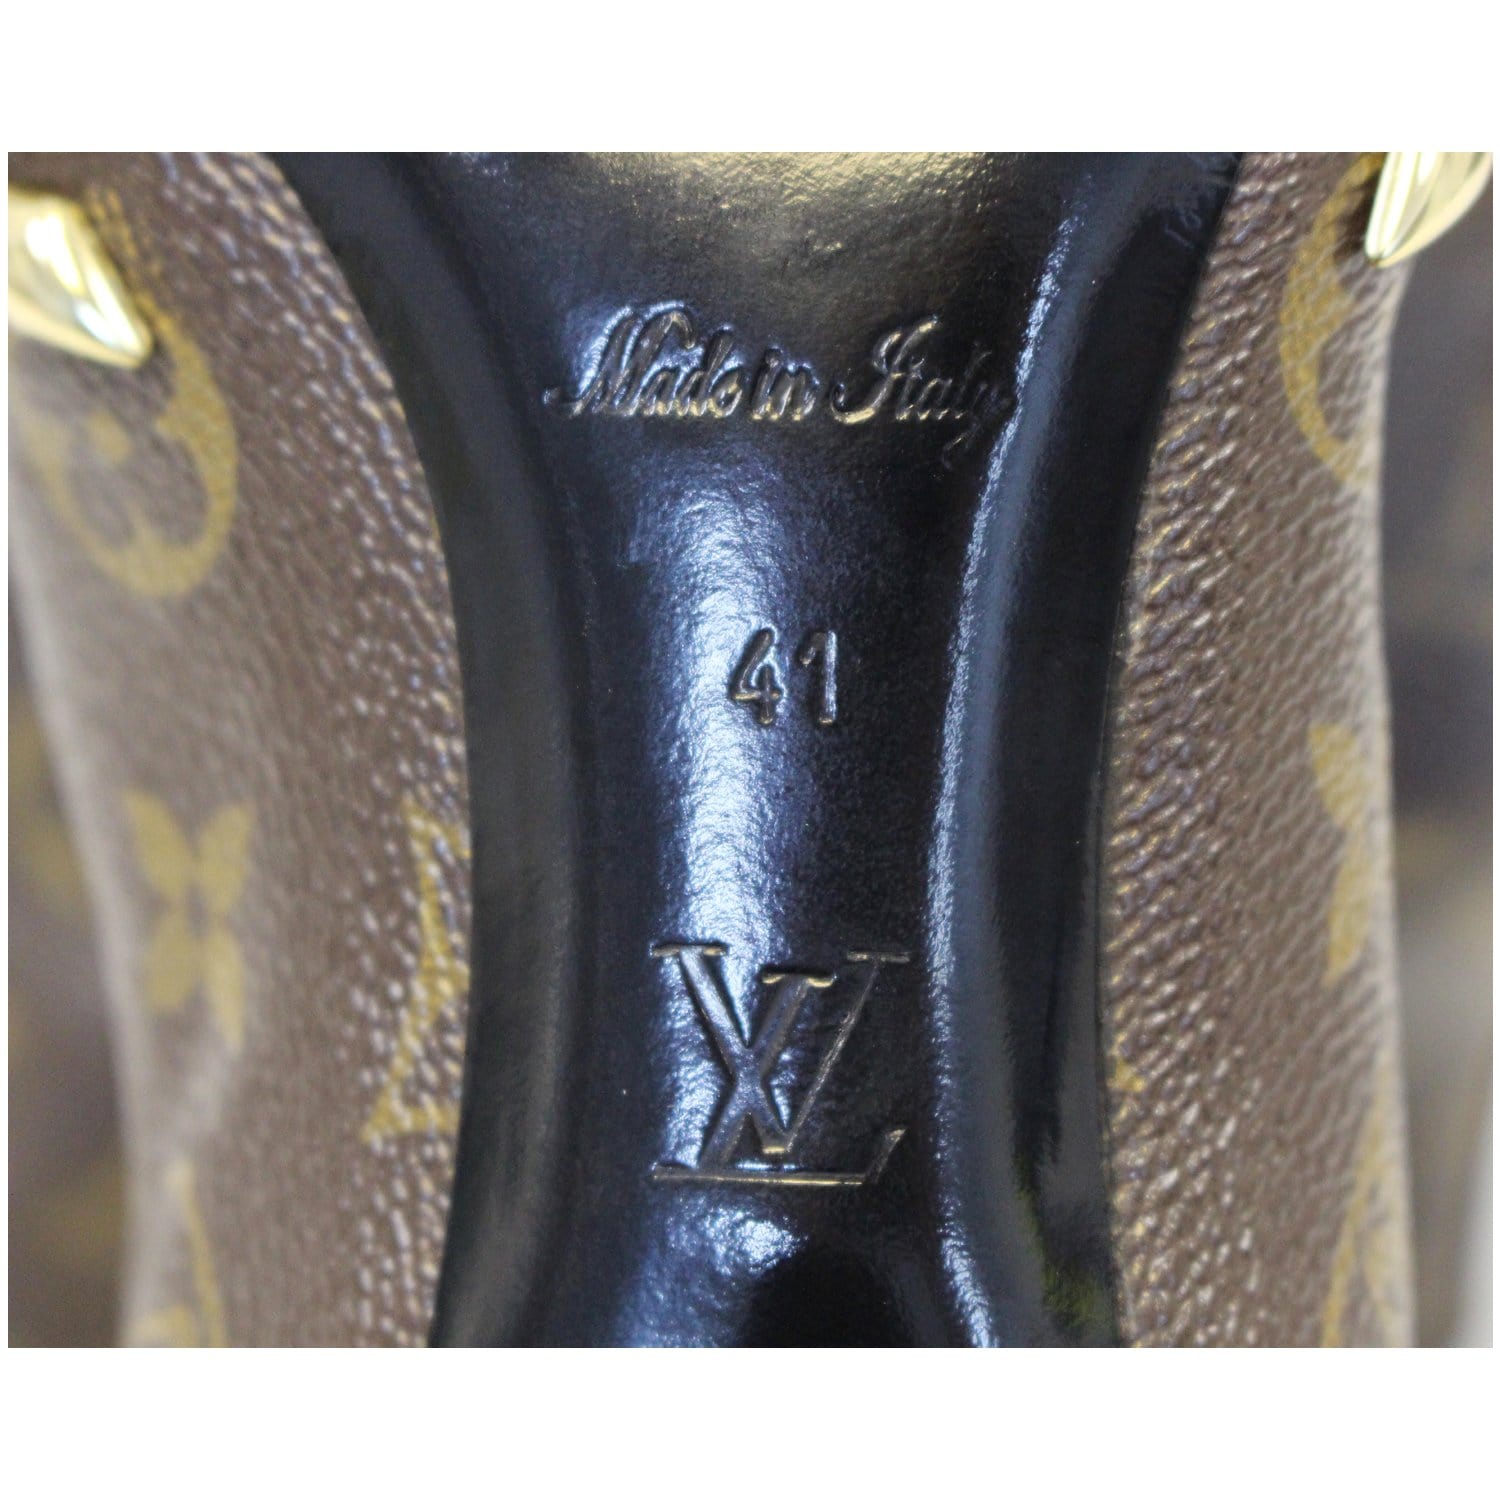 Louis Vuitton Metallic Silver Monogram Leather Sneakers Size 40